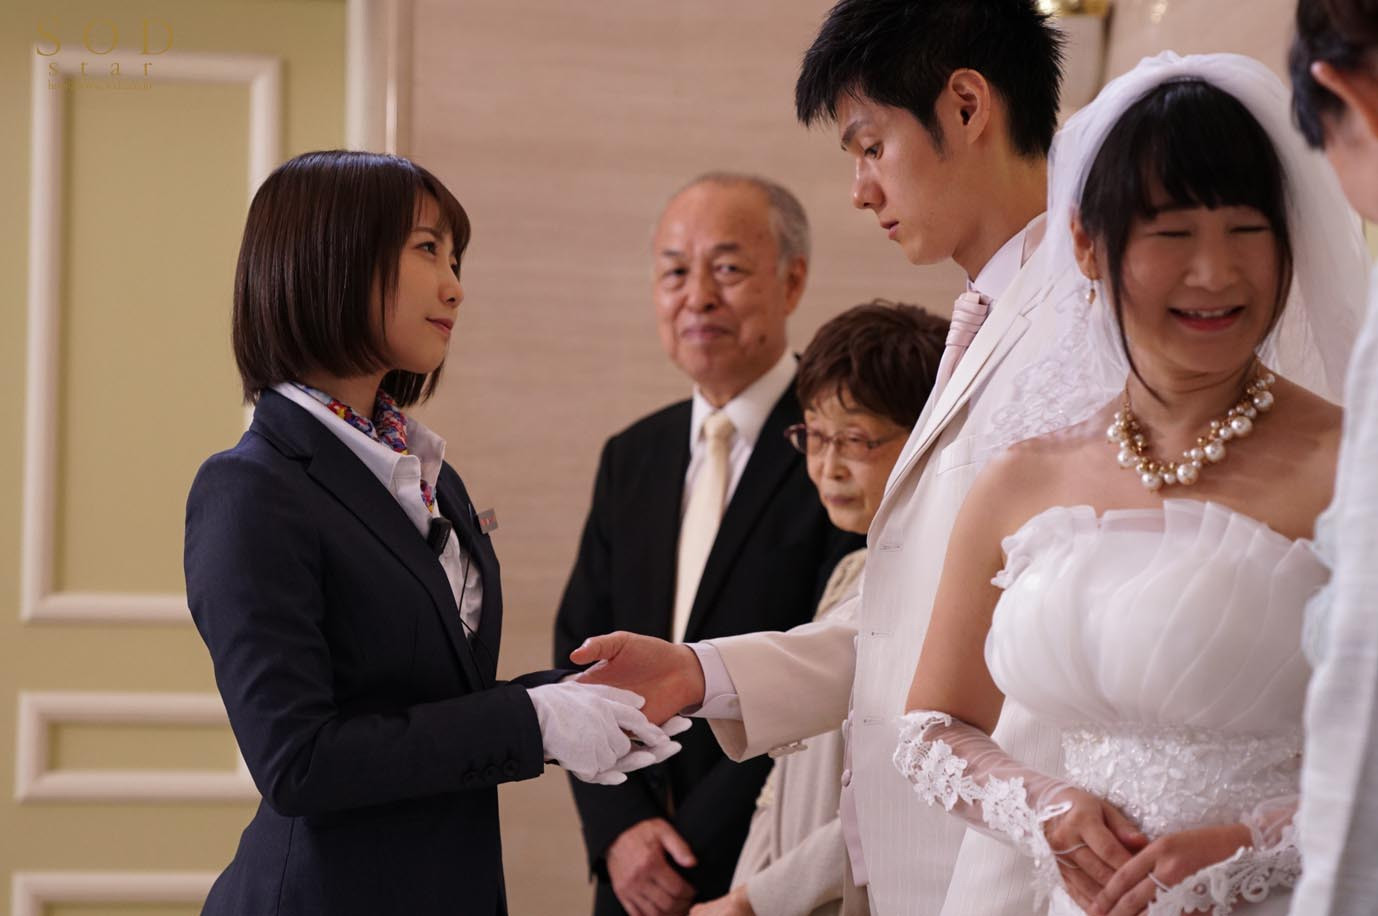 戸田真琴 結婚式最中の新郎に強制中出しさせる美人ウェディングプランナー イメージ1